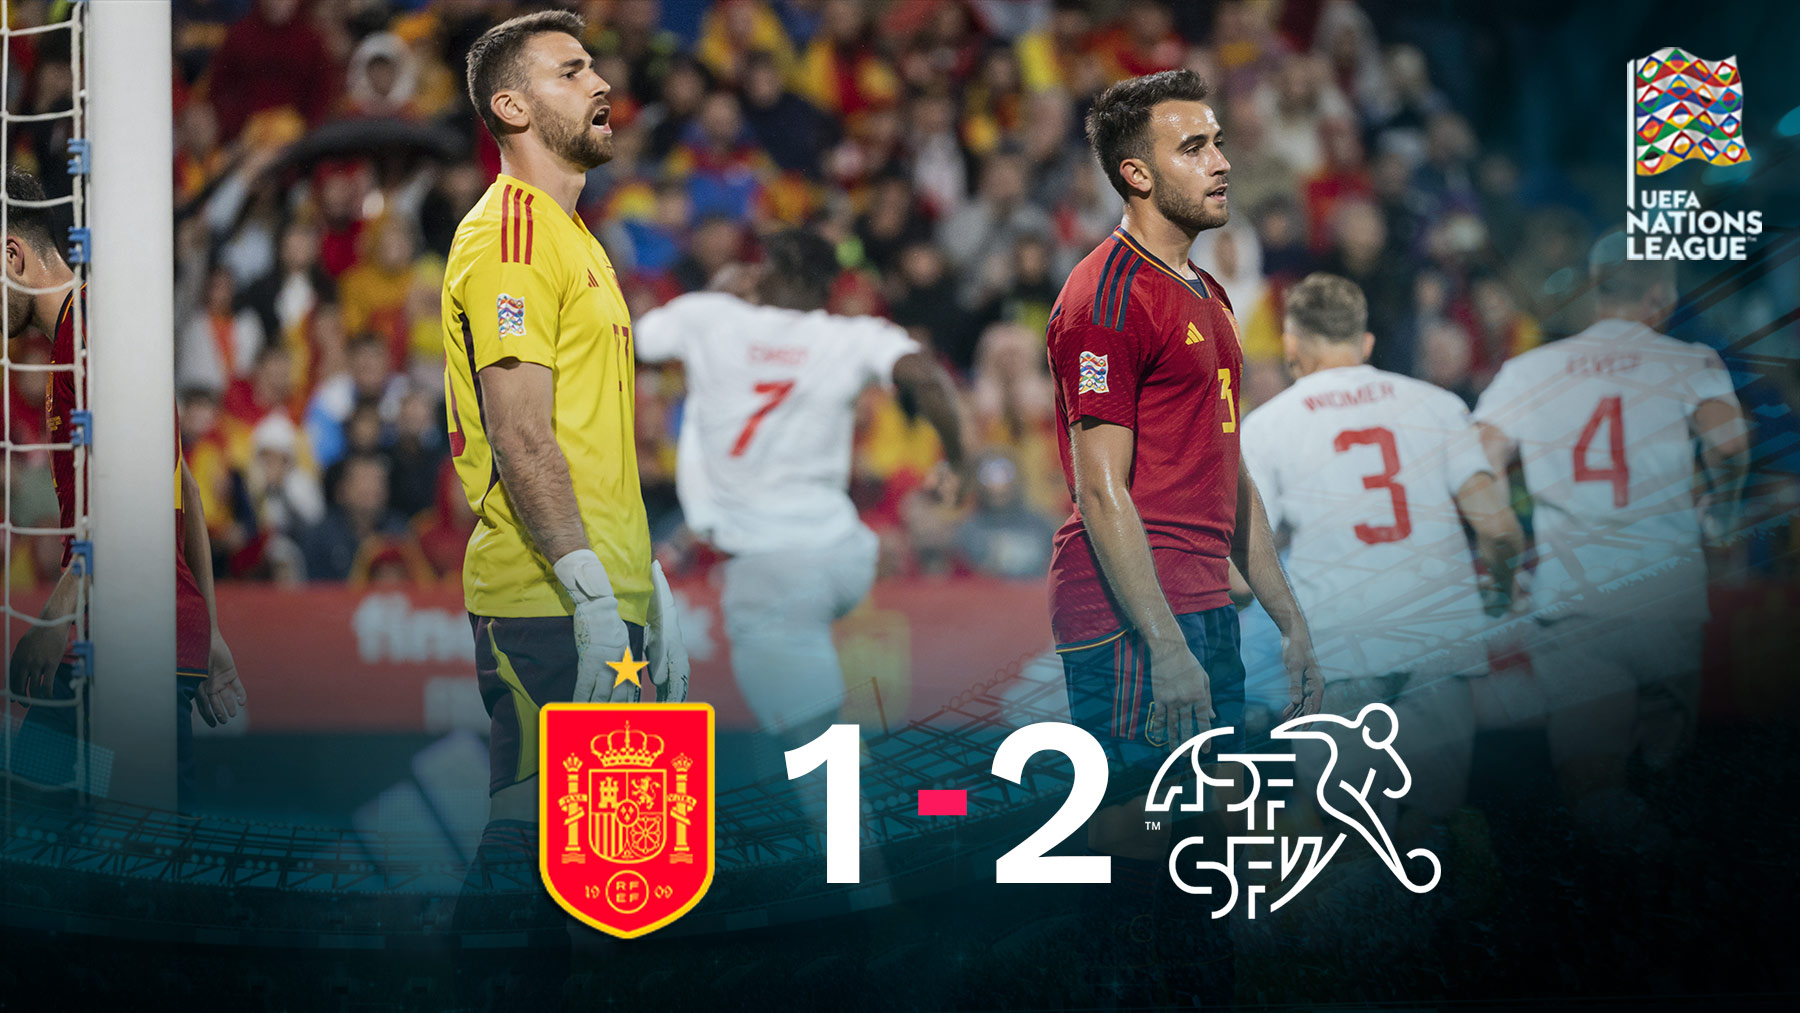 España cayó 1-2 ante Suiza en La Romareda.España cayó 1-2 ante Suiza en La Romareda.